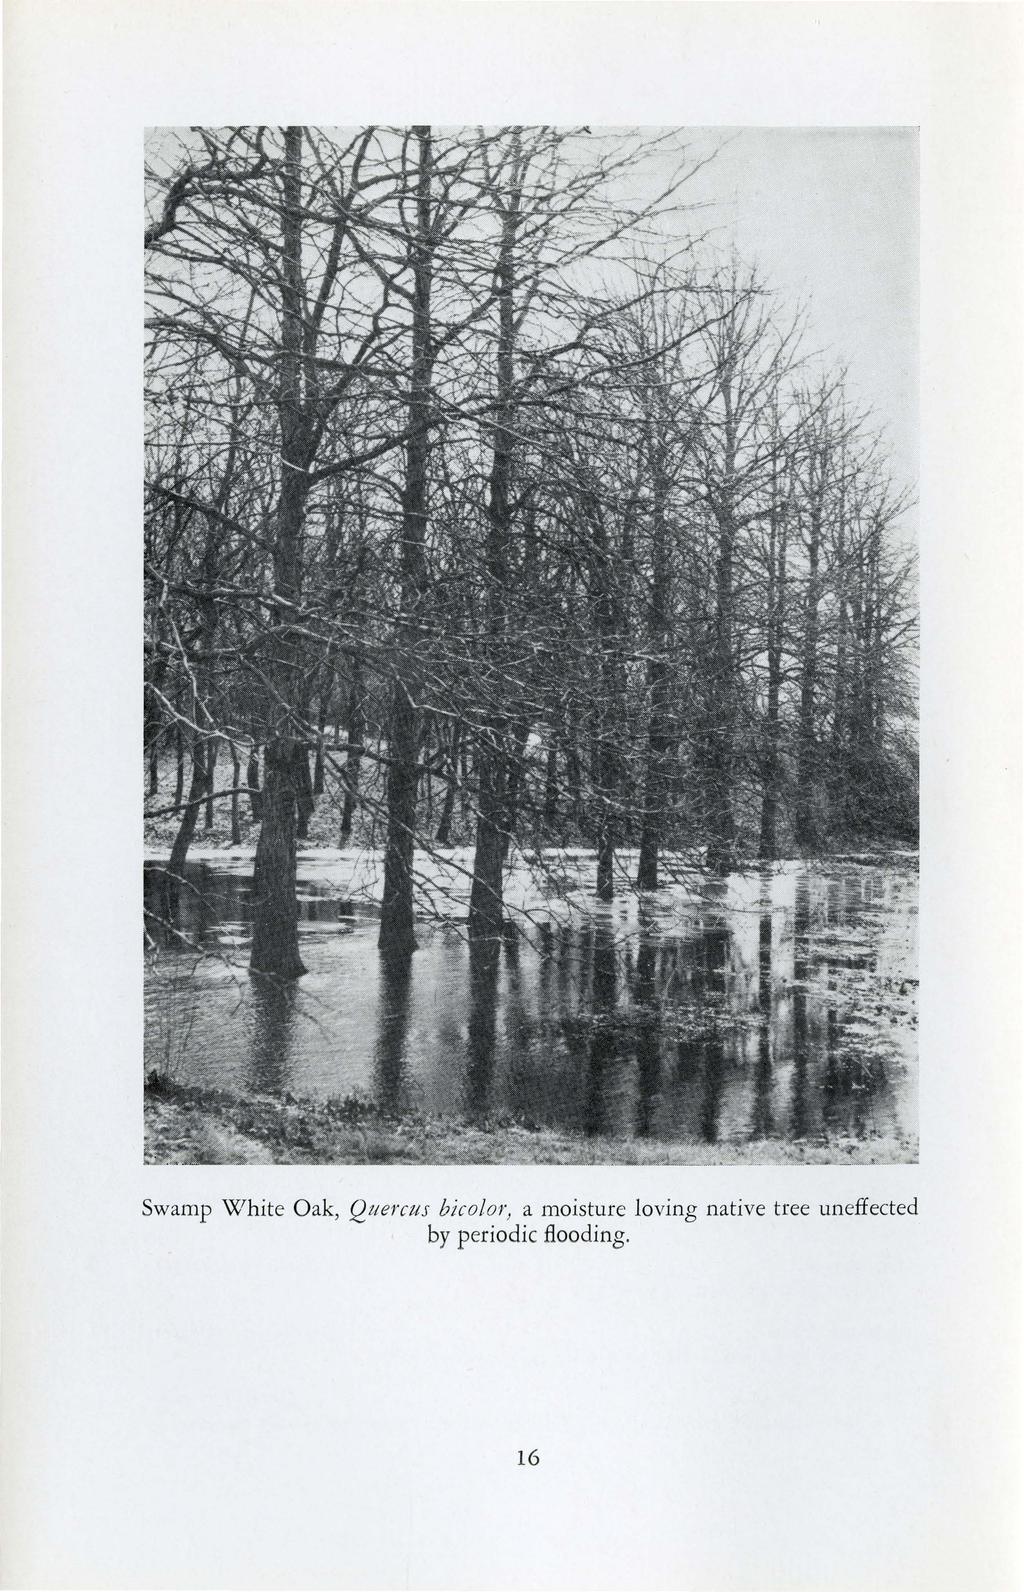 Swamp White Oak, Qttercus bicolor) a moisture